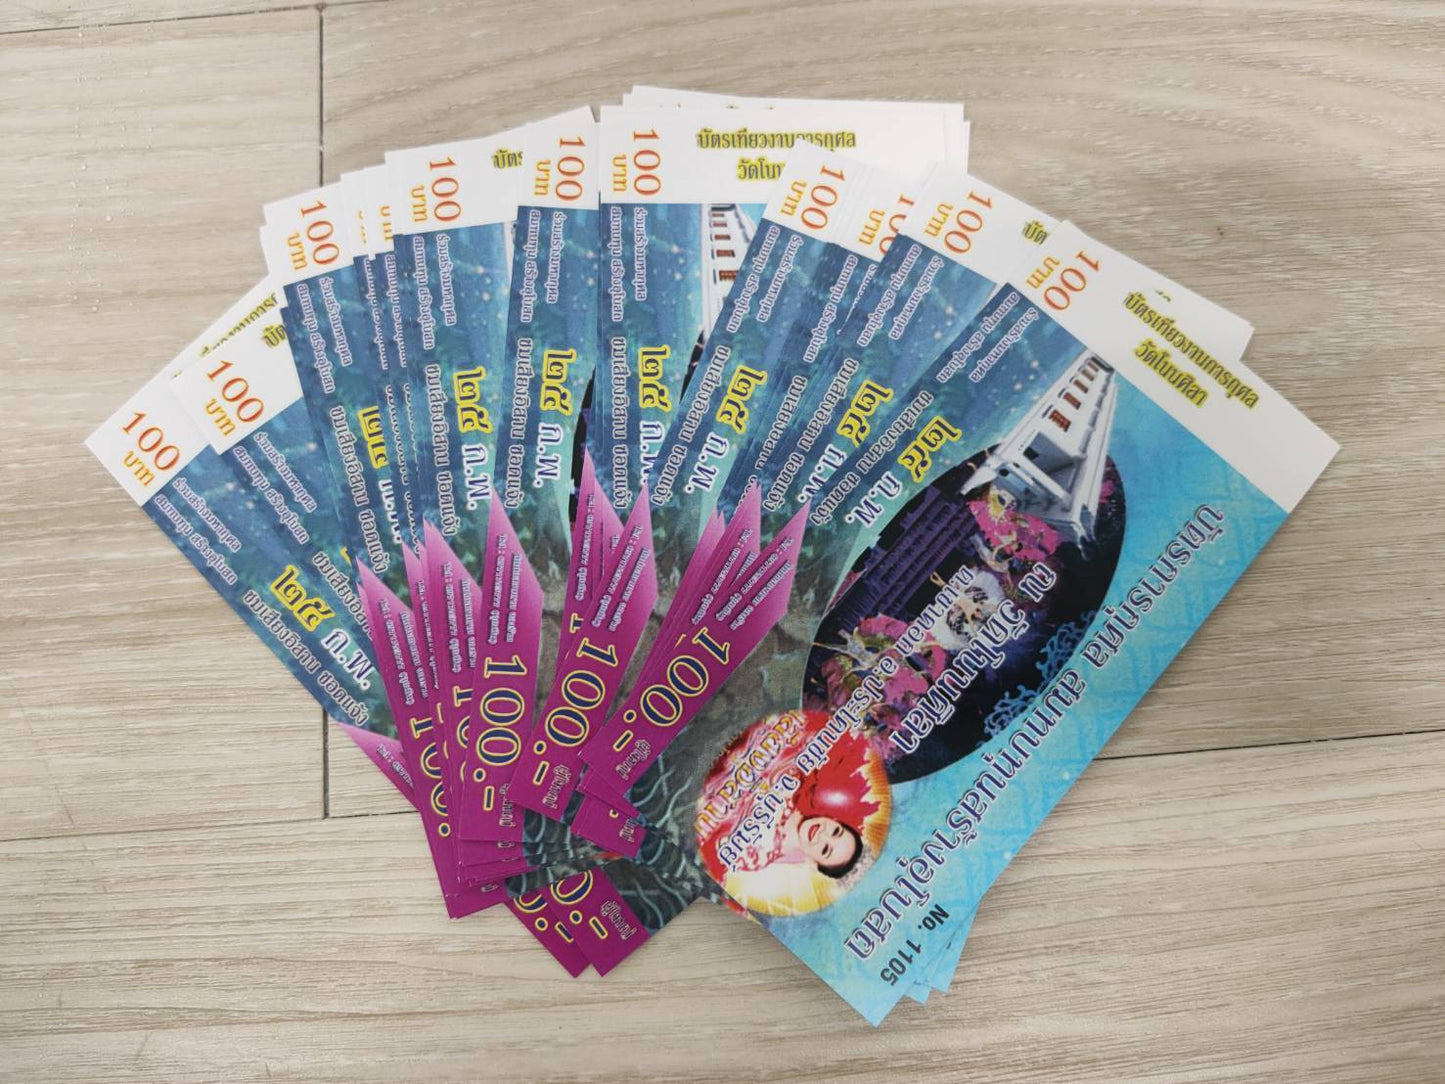 พิมพ์ตั๋วคอนเสิร์ต บัตรการกุศล คูปอง นามบัตร จำนวนน้อย ราคาถูก จัดส่งด่วน